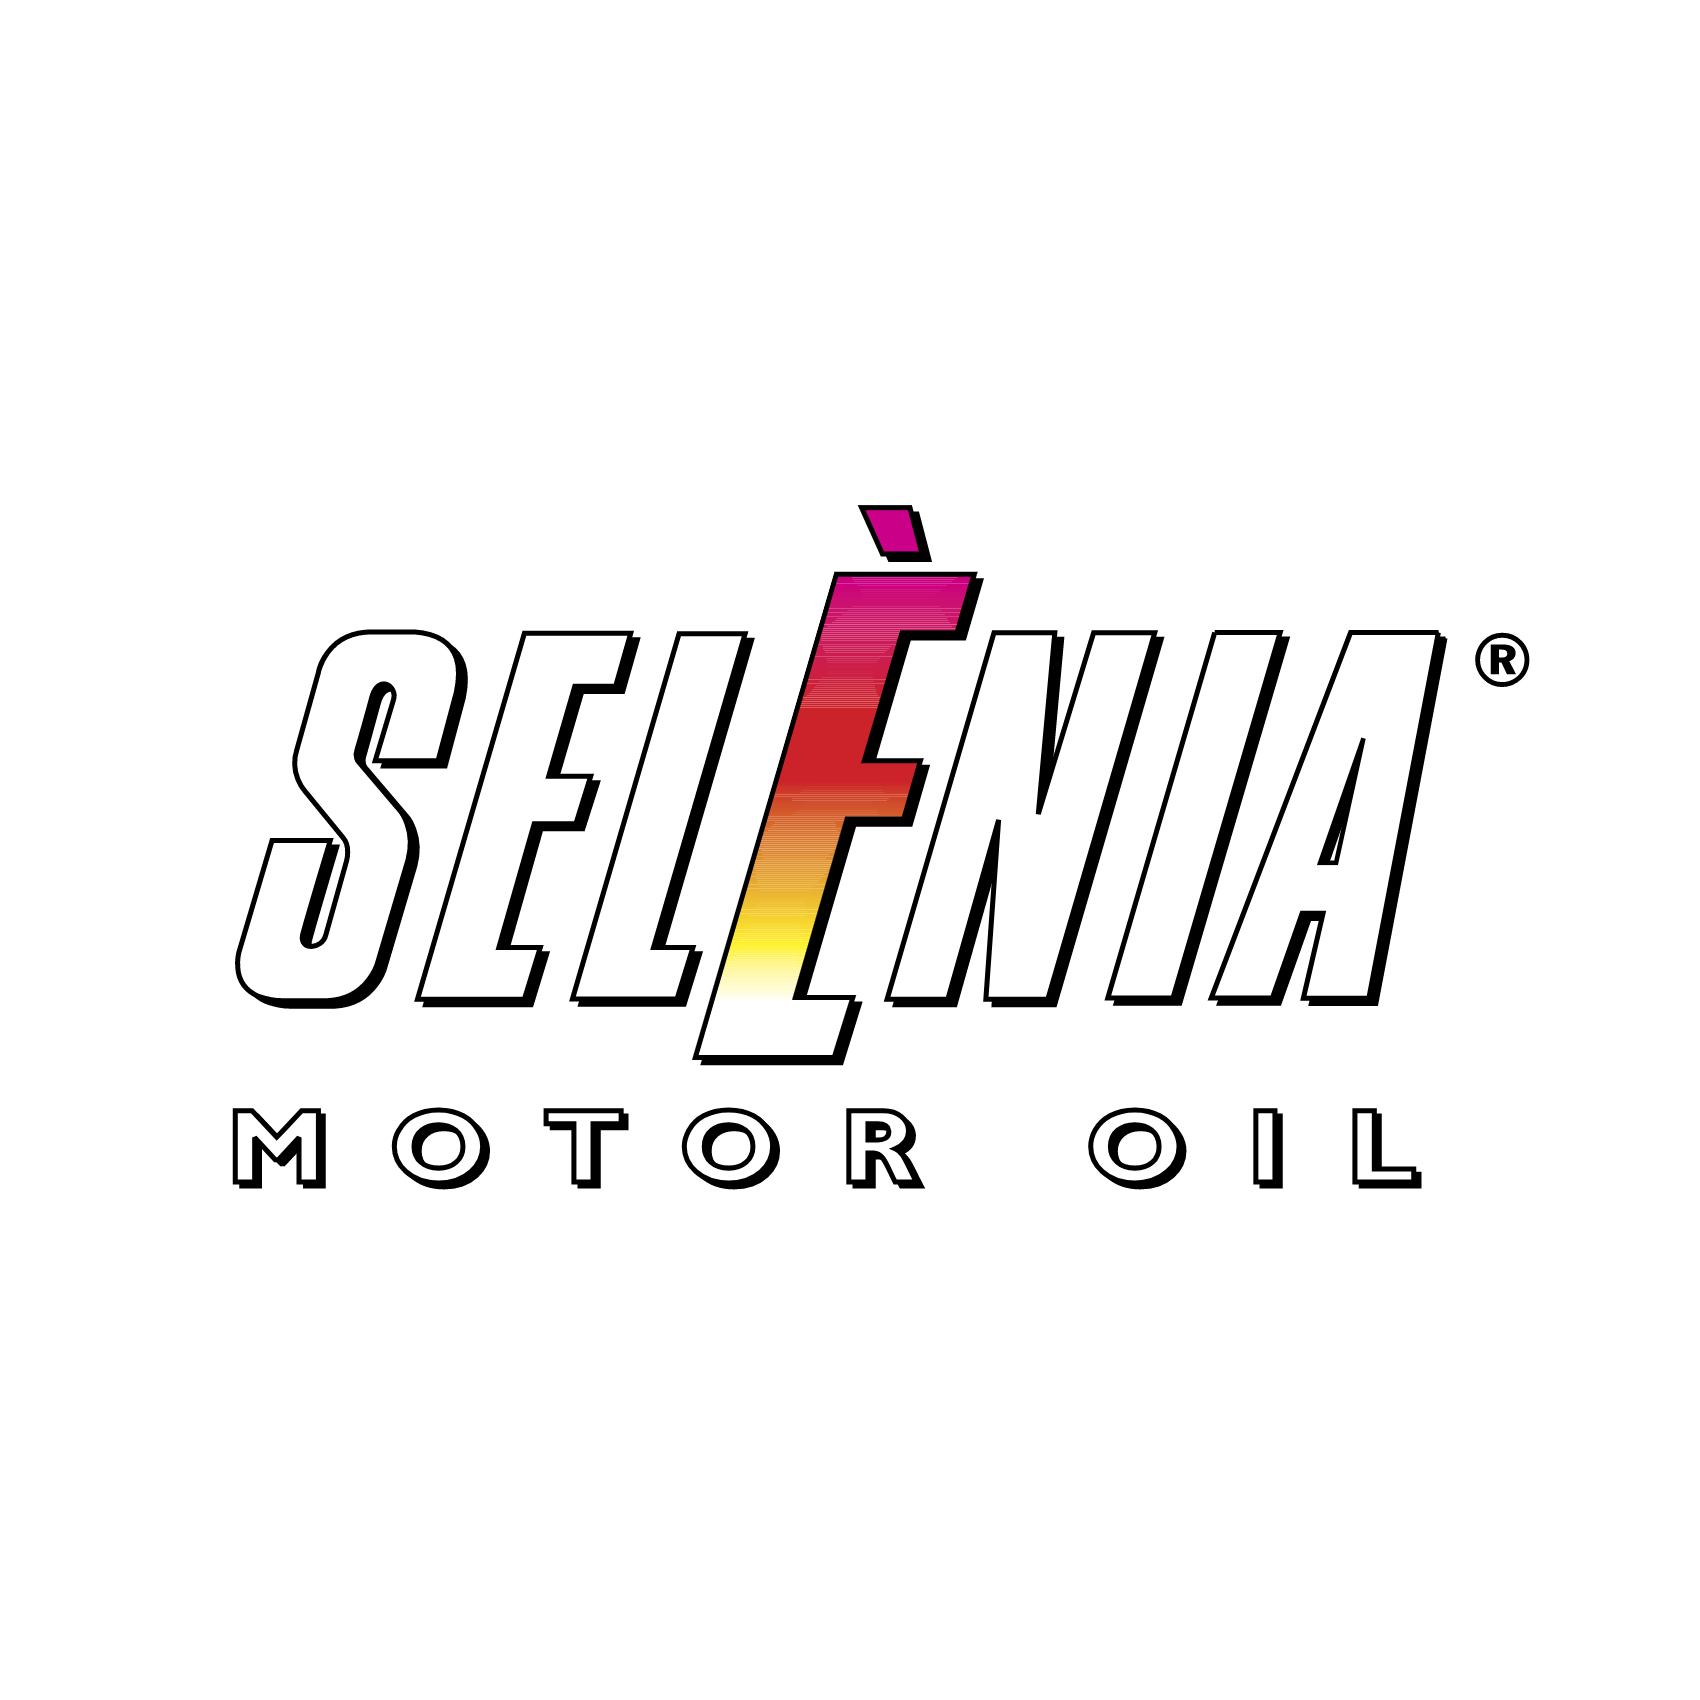 Selenia Motor Oil